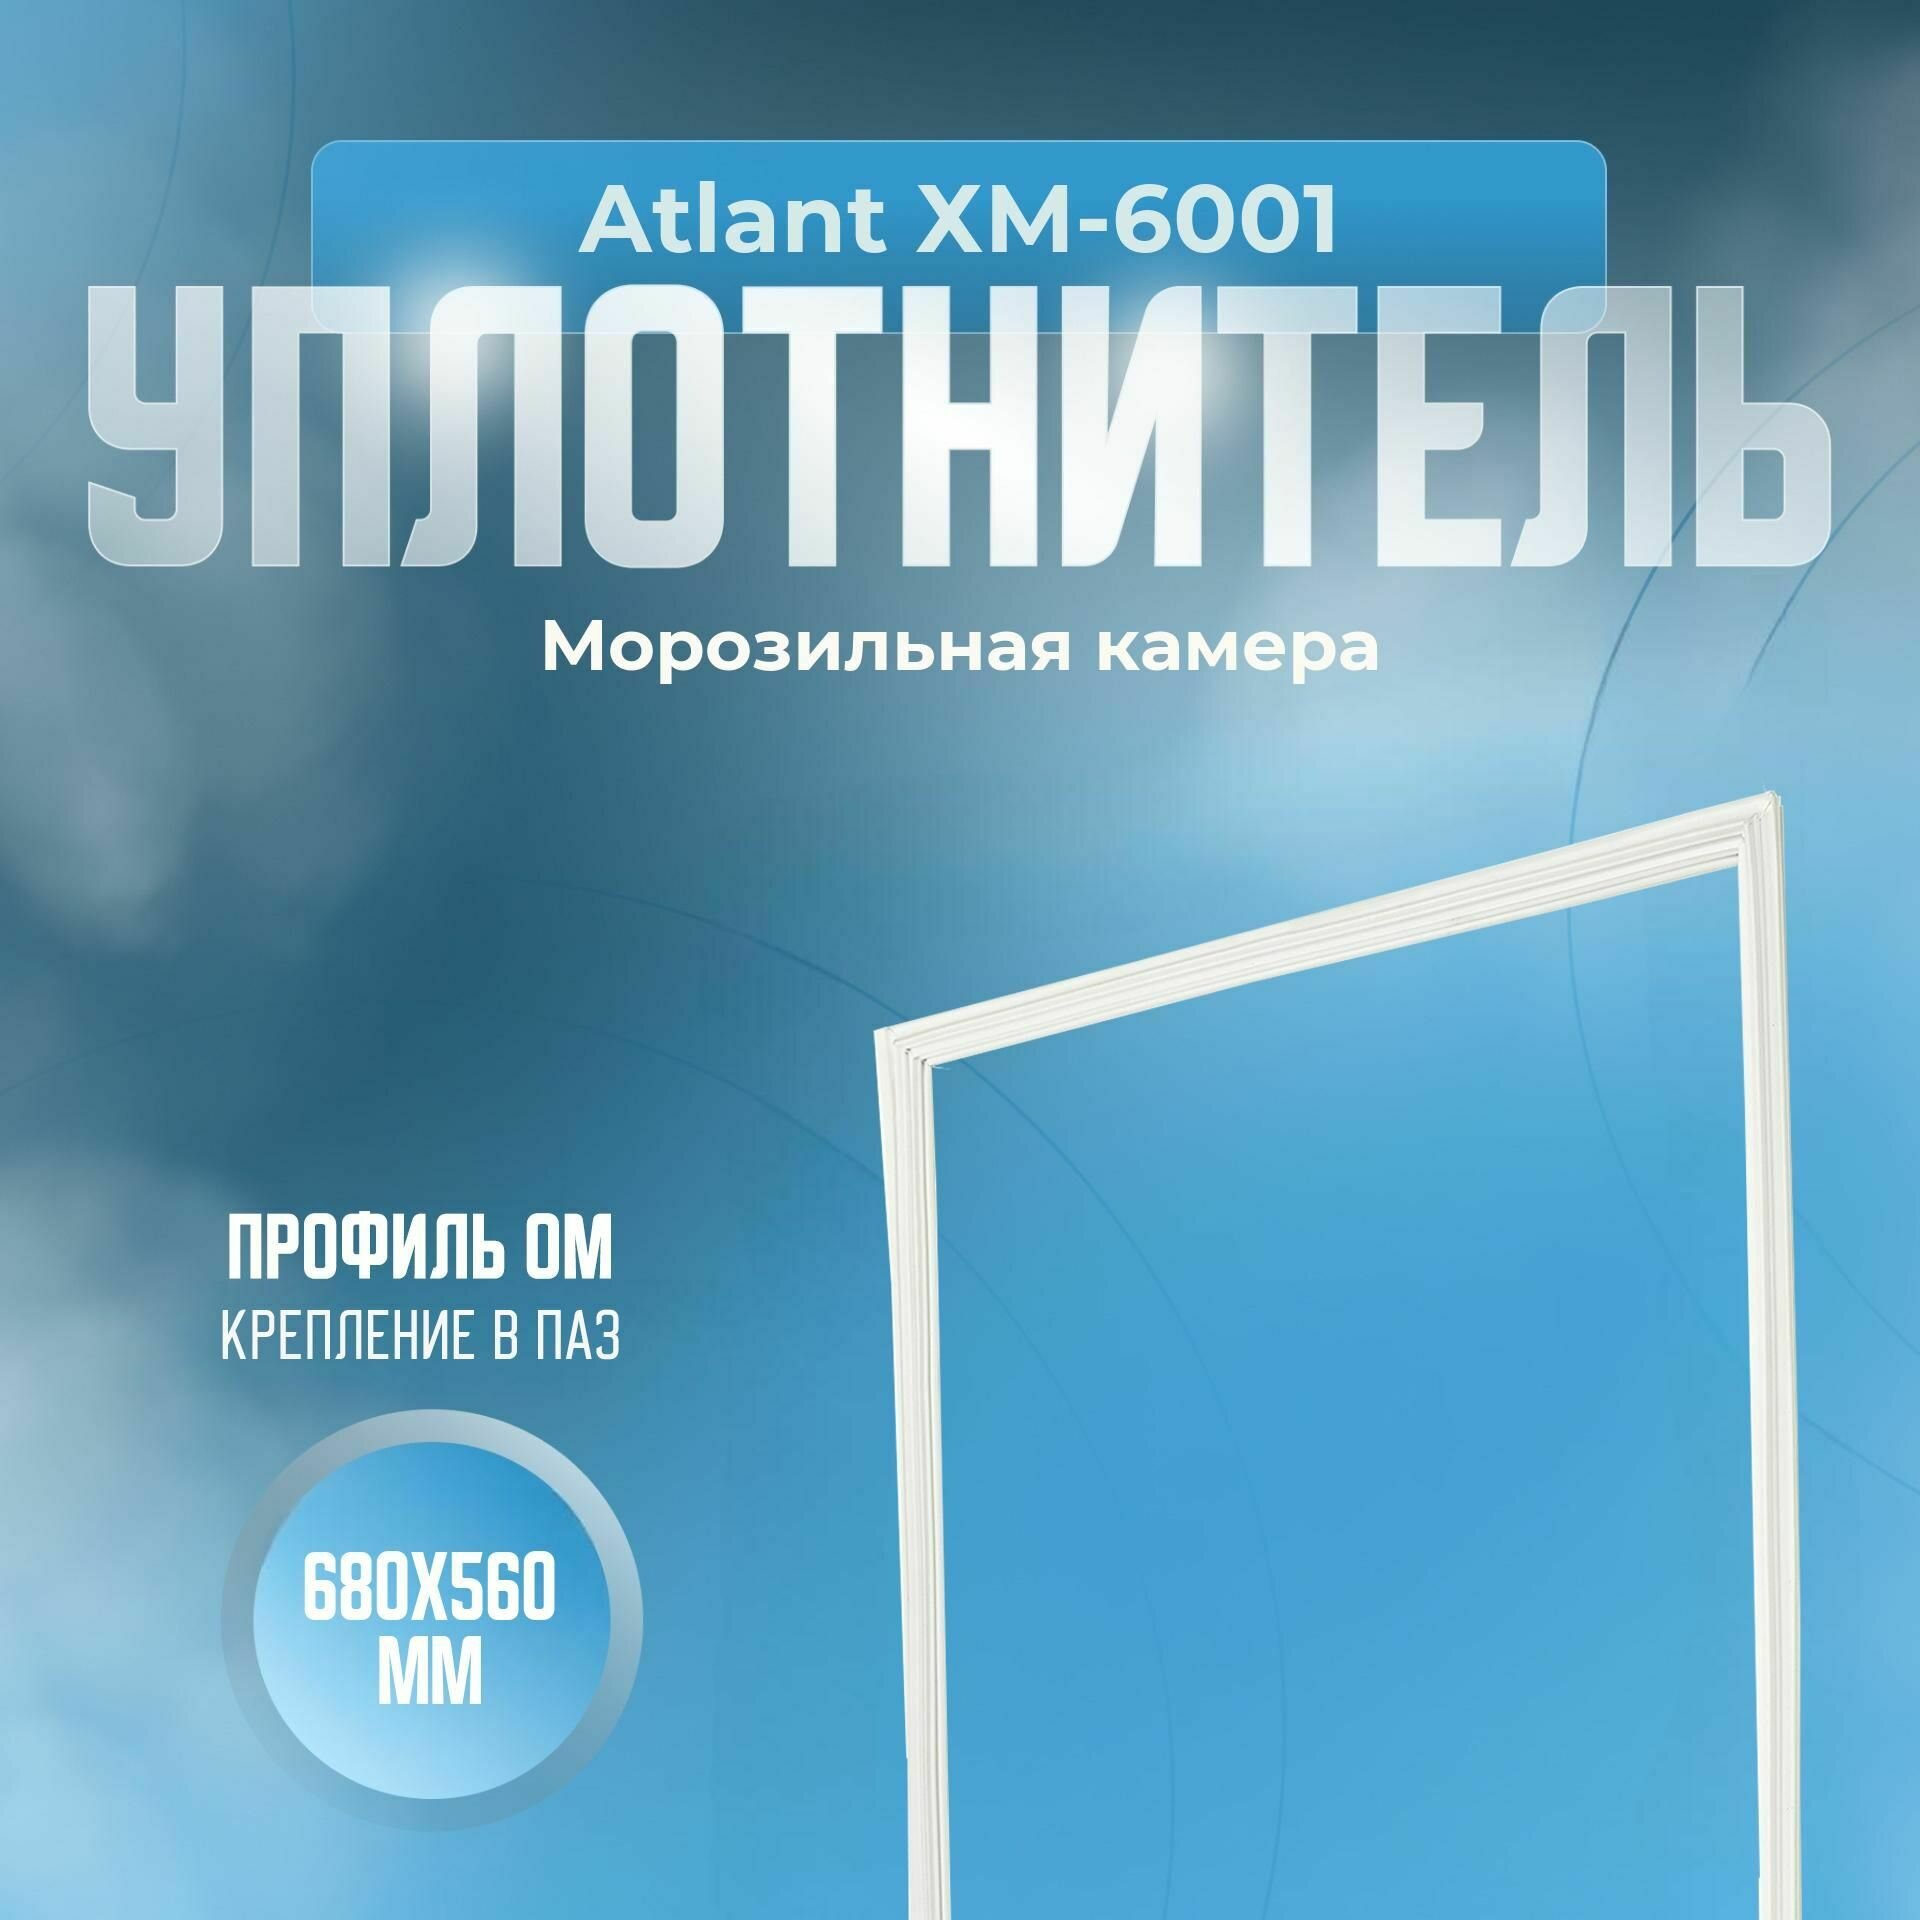 Уплотнитель Atlant ХМ-6001. м. к, Размер - 680x560 мм. ОМ